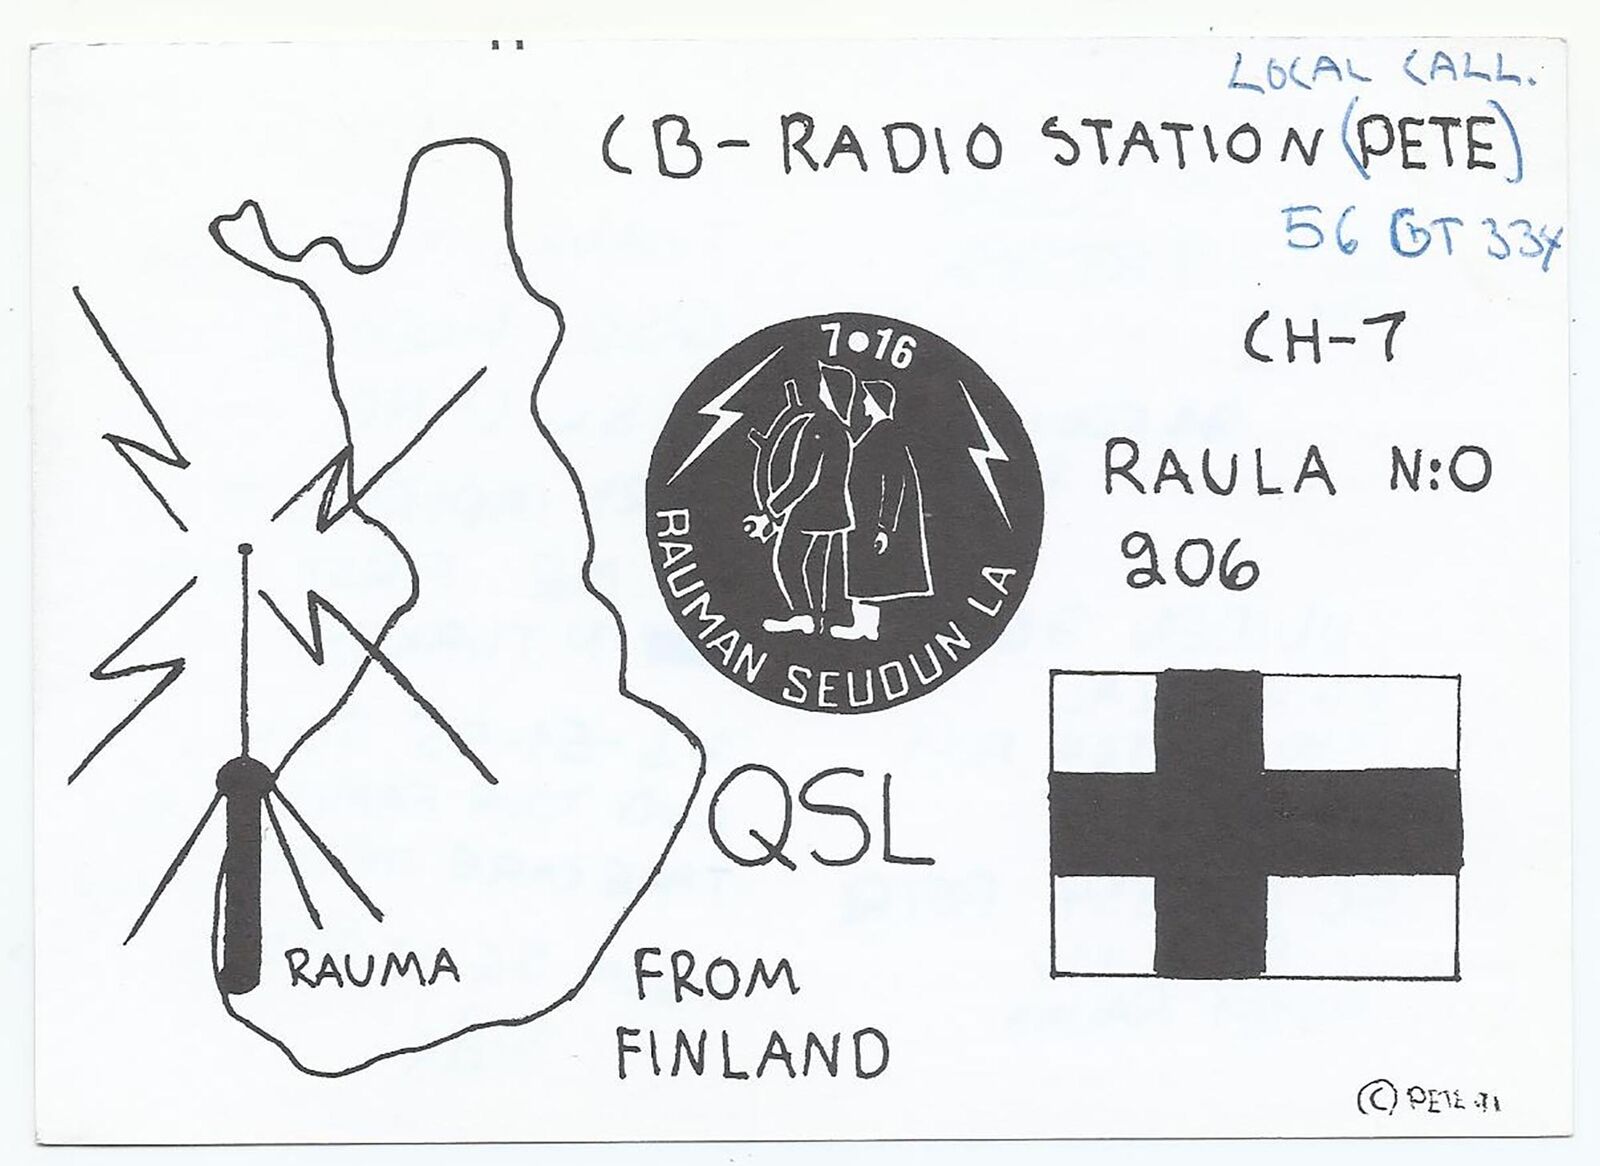 Rauma Finland QSL Card, 56 GT 334, 1990s